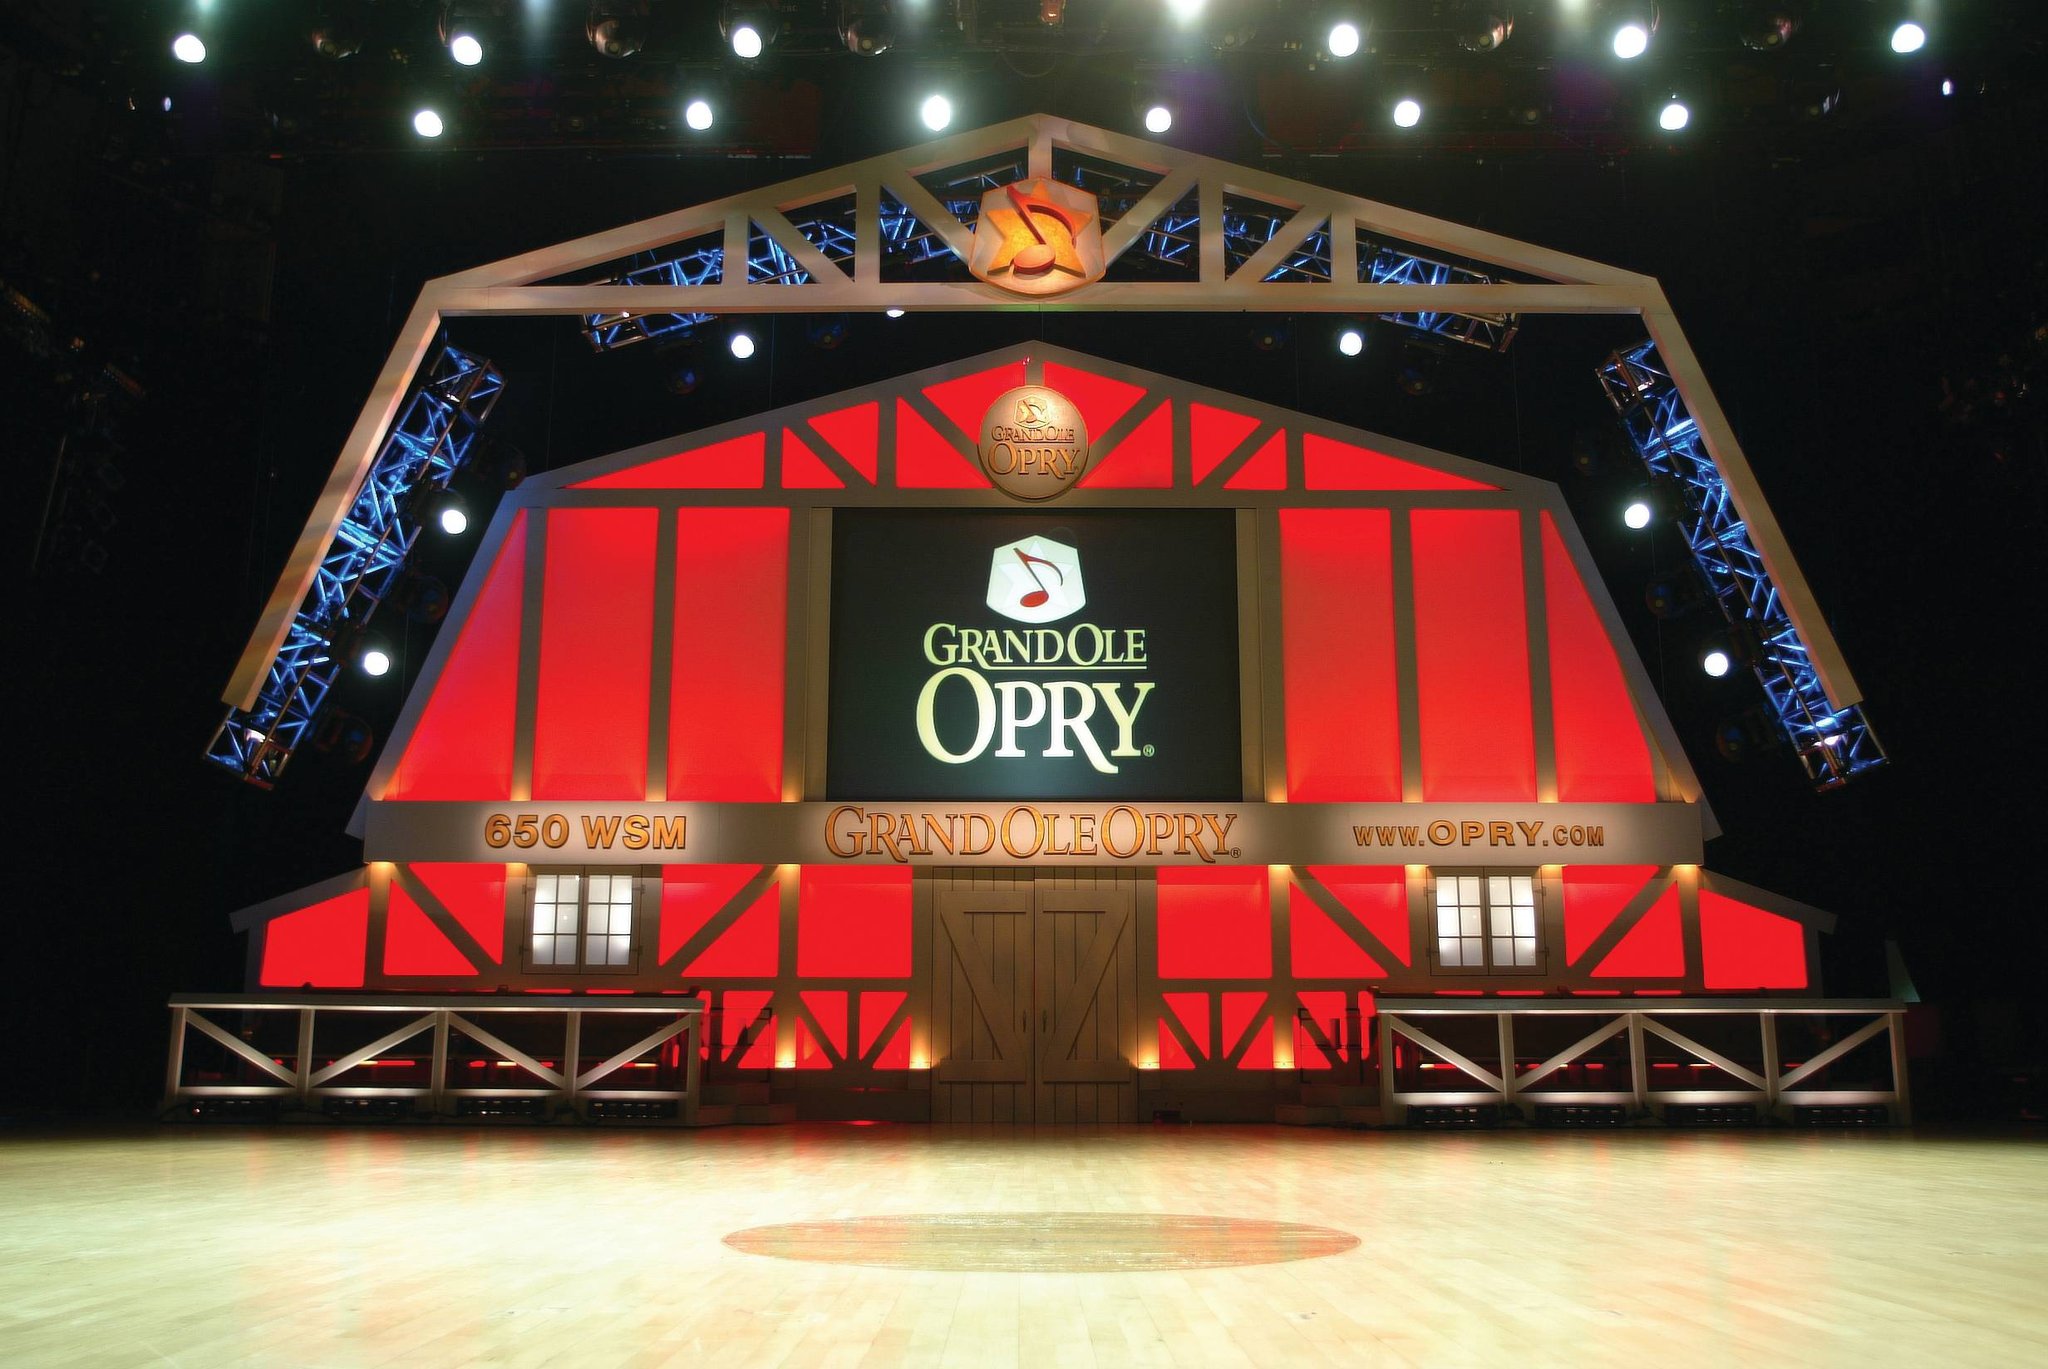 Grand Ole Opry near Wyndham Nashville in Nashville, Tennessee